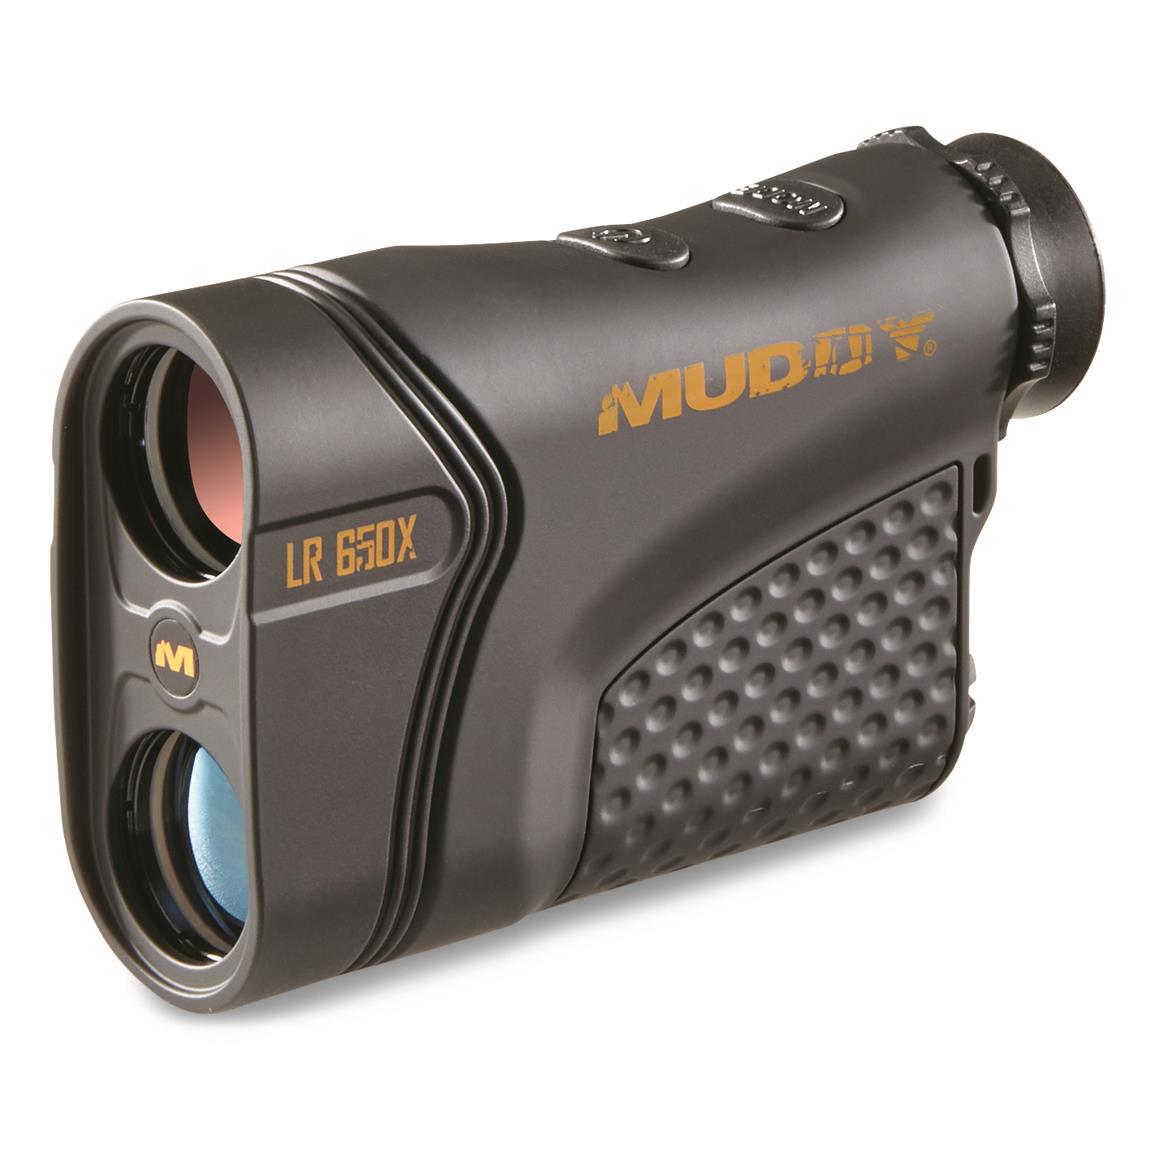 Muddy LR650X Laser Rangefinder